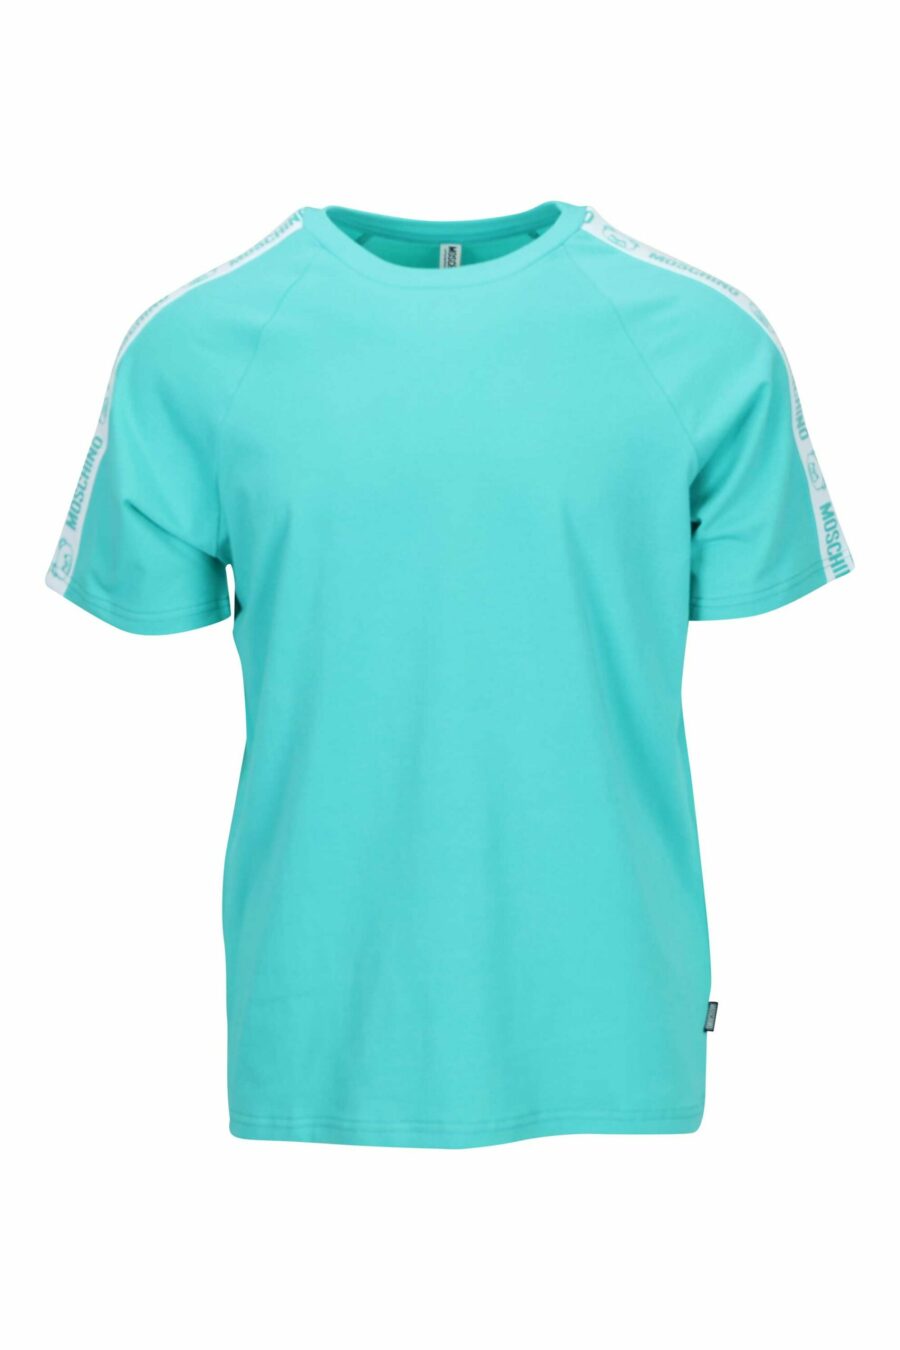 Camiseta azul aguamarina con logo oso "underbear" en cinta hombros - 667113602400 scaled